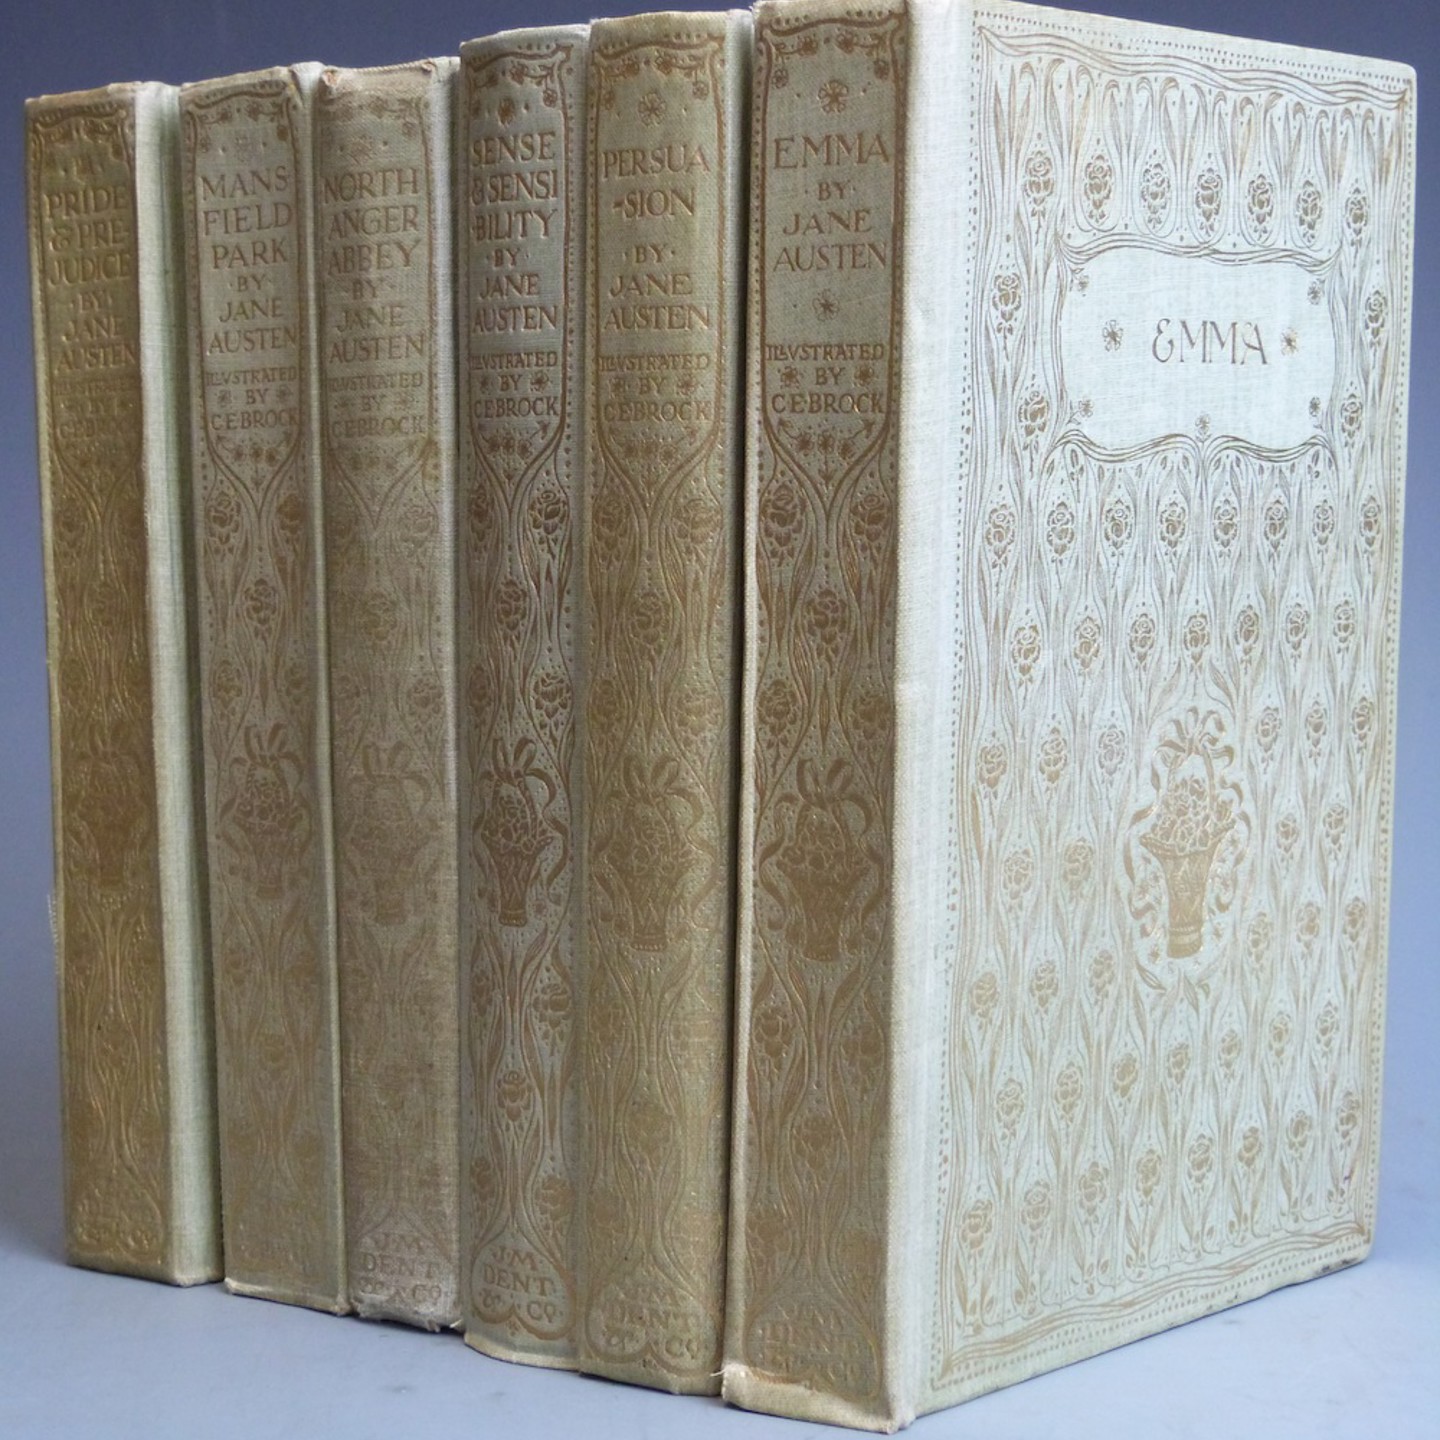 Jane Austen Novels Including Pride & Prejudice, Sense & Sensibility, Emma, Mansfield Park, Northanger Abbey And Persuasion, Published J.M. Dent 1907 1909 In 6 Volumes. HAMMER £700